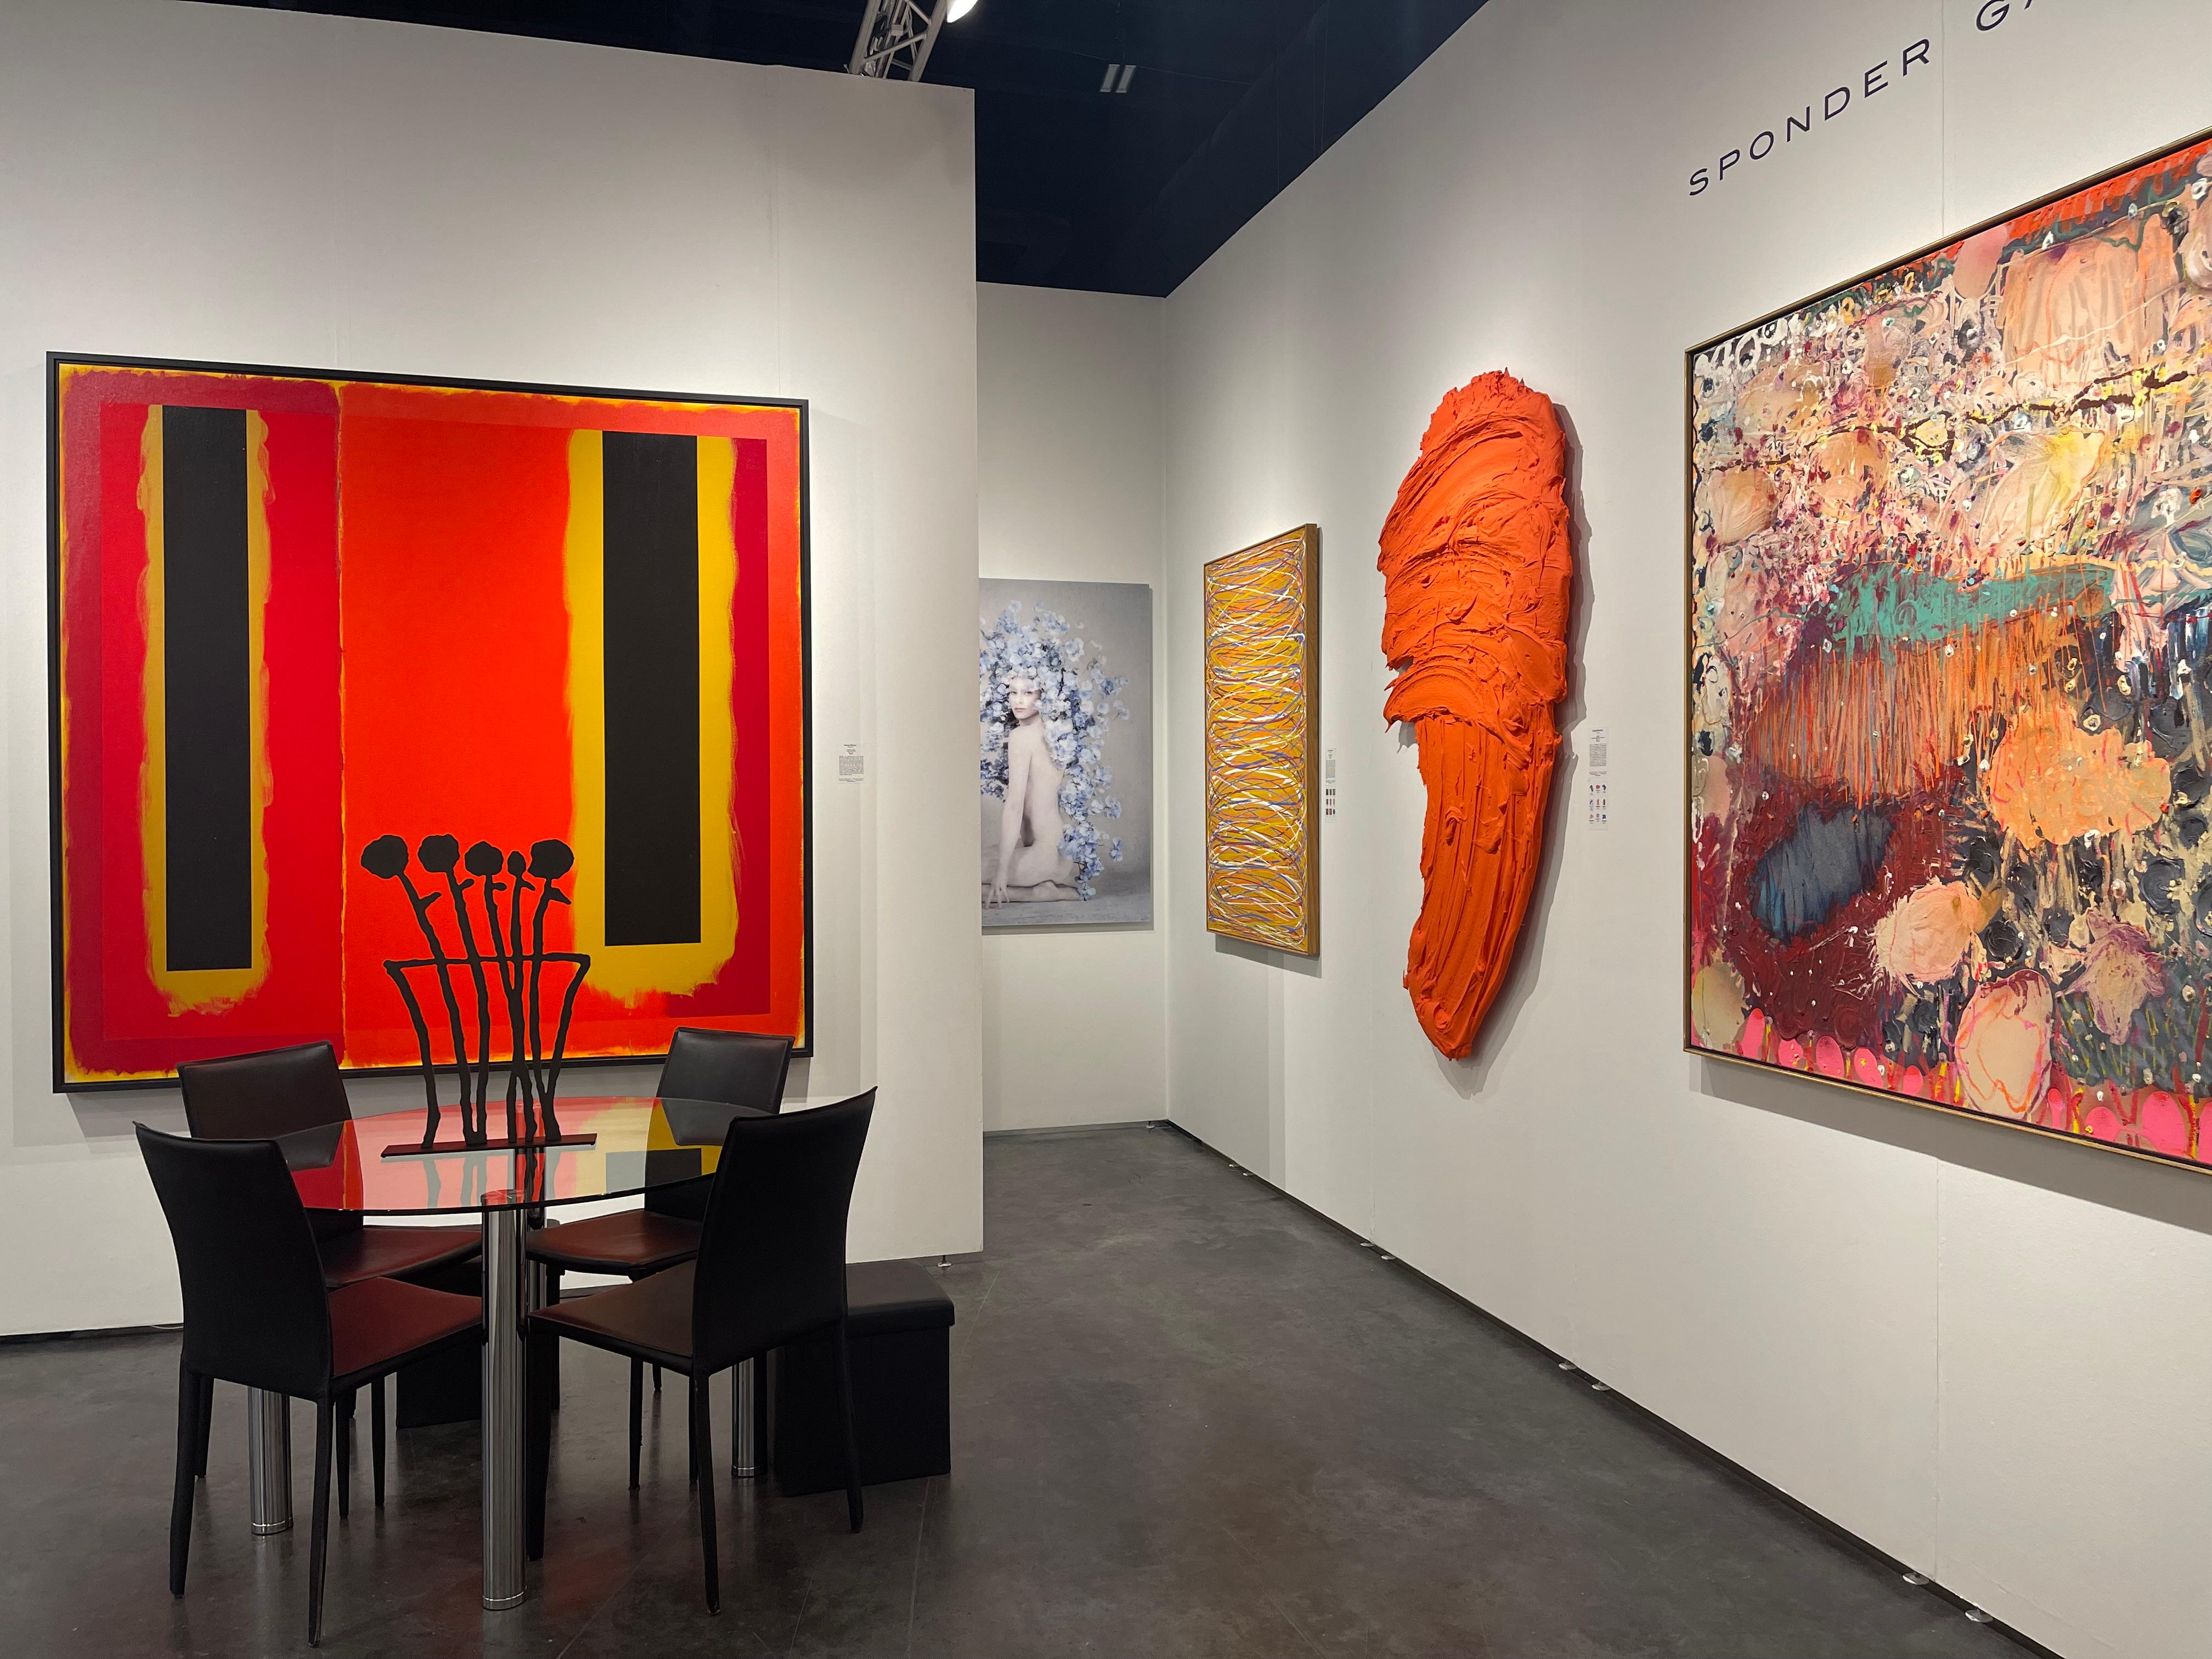 Bien qu'il ait fréquenté des artistes expressionnistes abstraits célèbres tels que Lee Krasner et Robert Motherwell, Doug Ohlson crée des peintures sobres et géométriques. Ses toiles Color Field s'inspirent des étendues saturées de ciel ouvert et de